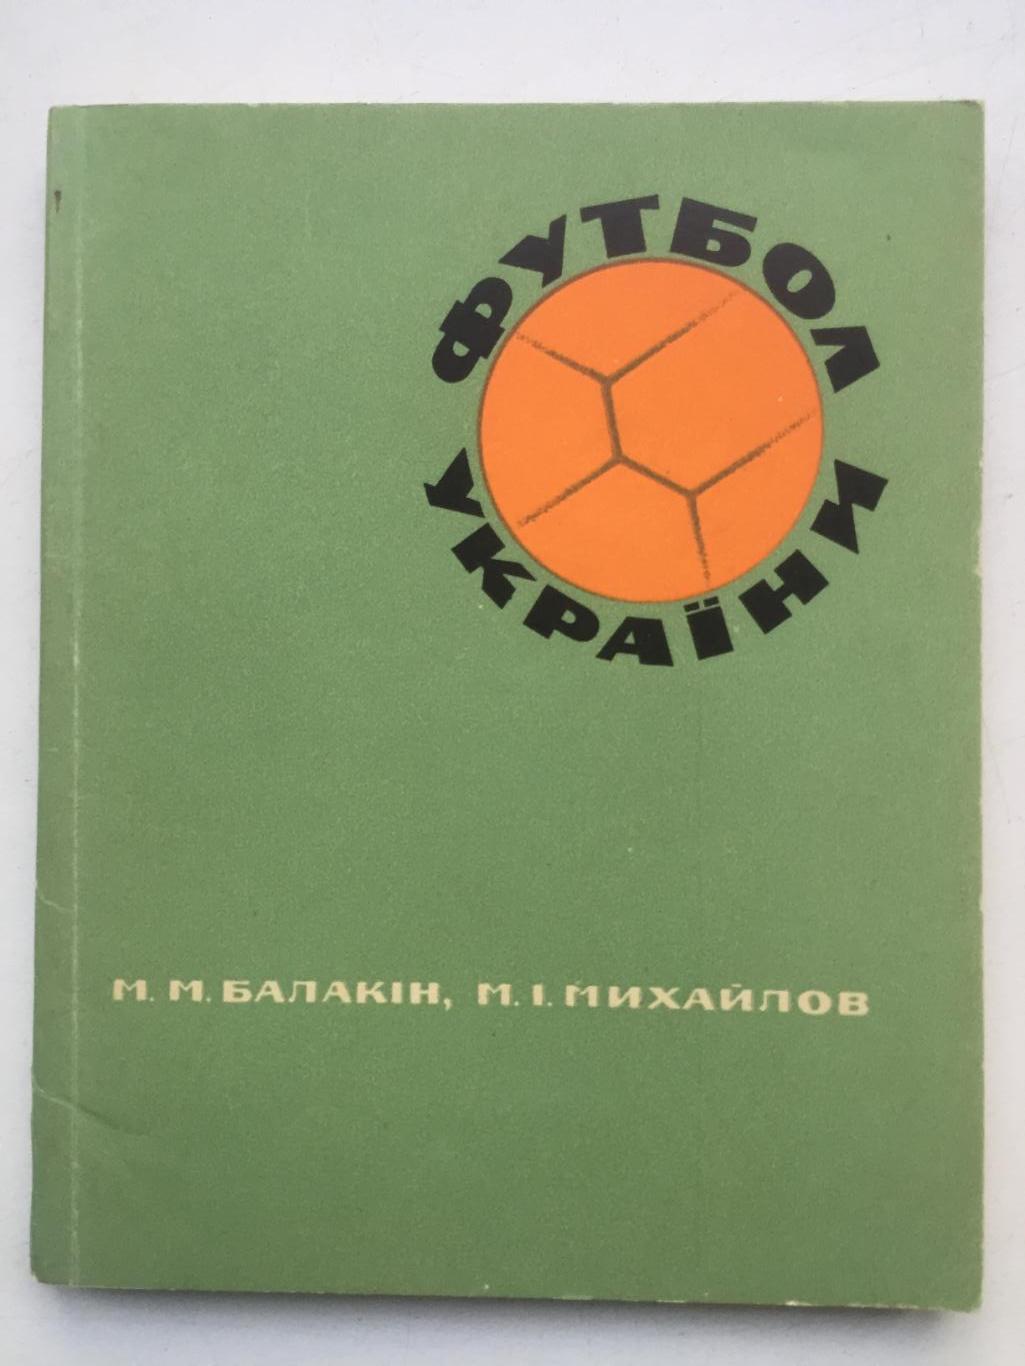 Балакин, Михайлов Футбол Украины на украинском языке Здоровье 1968